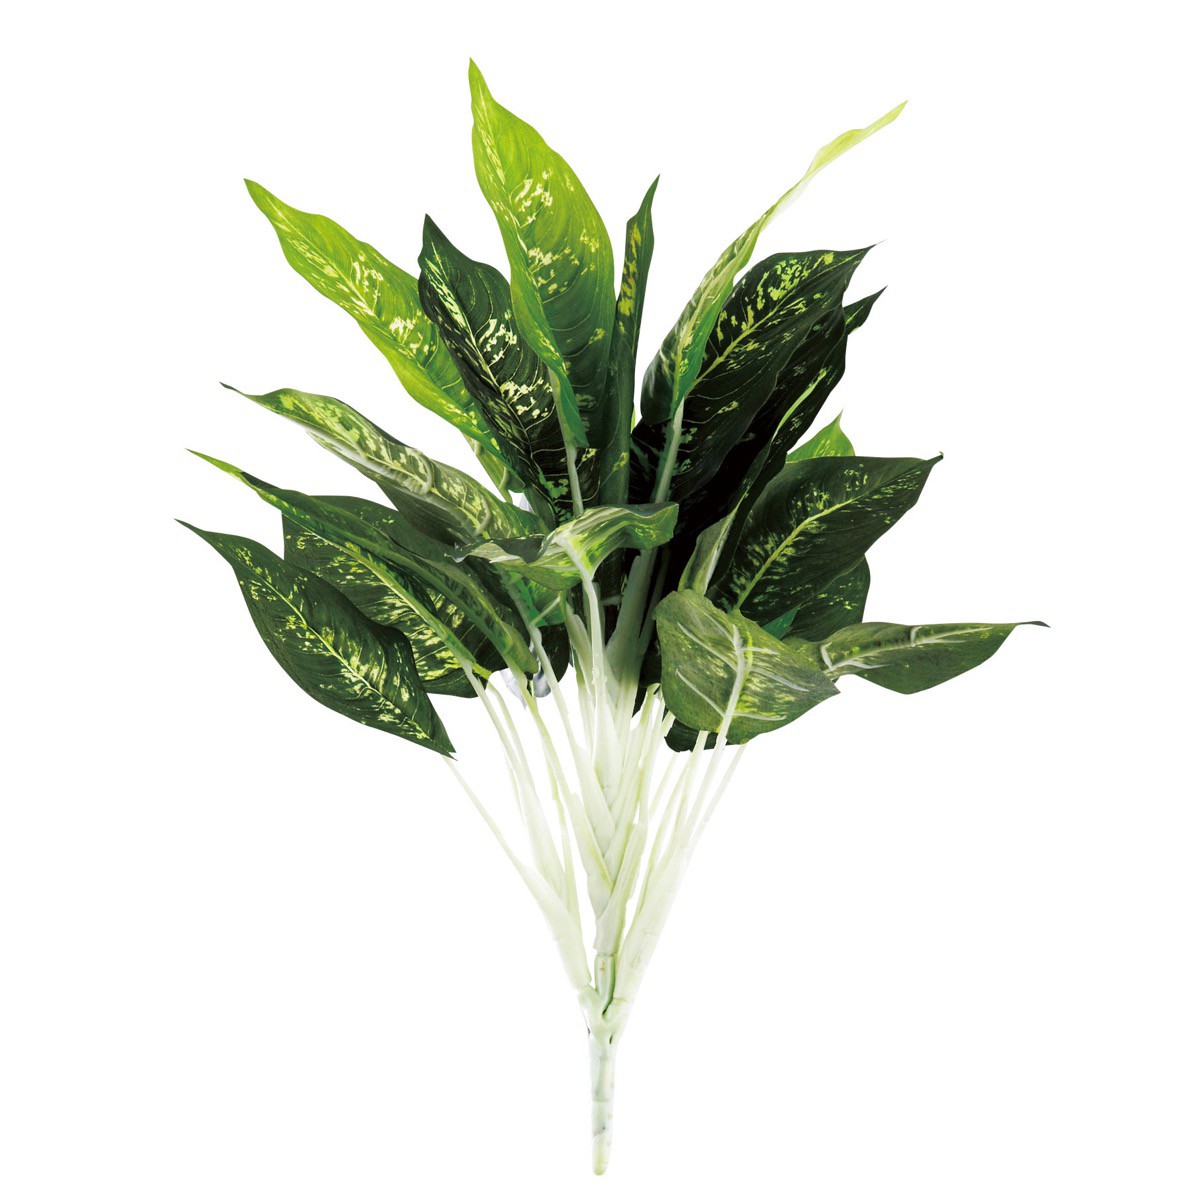  ディッフェンバキア 45cm 人工観葉植物 フェイクグリーン 造花 インテリア おしゃれ CT触媒 消臭 抗菌